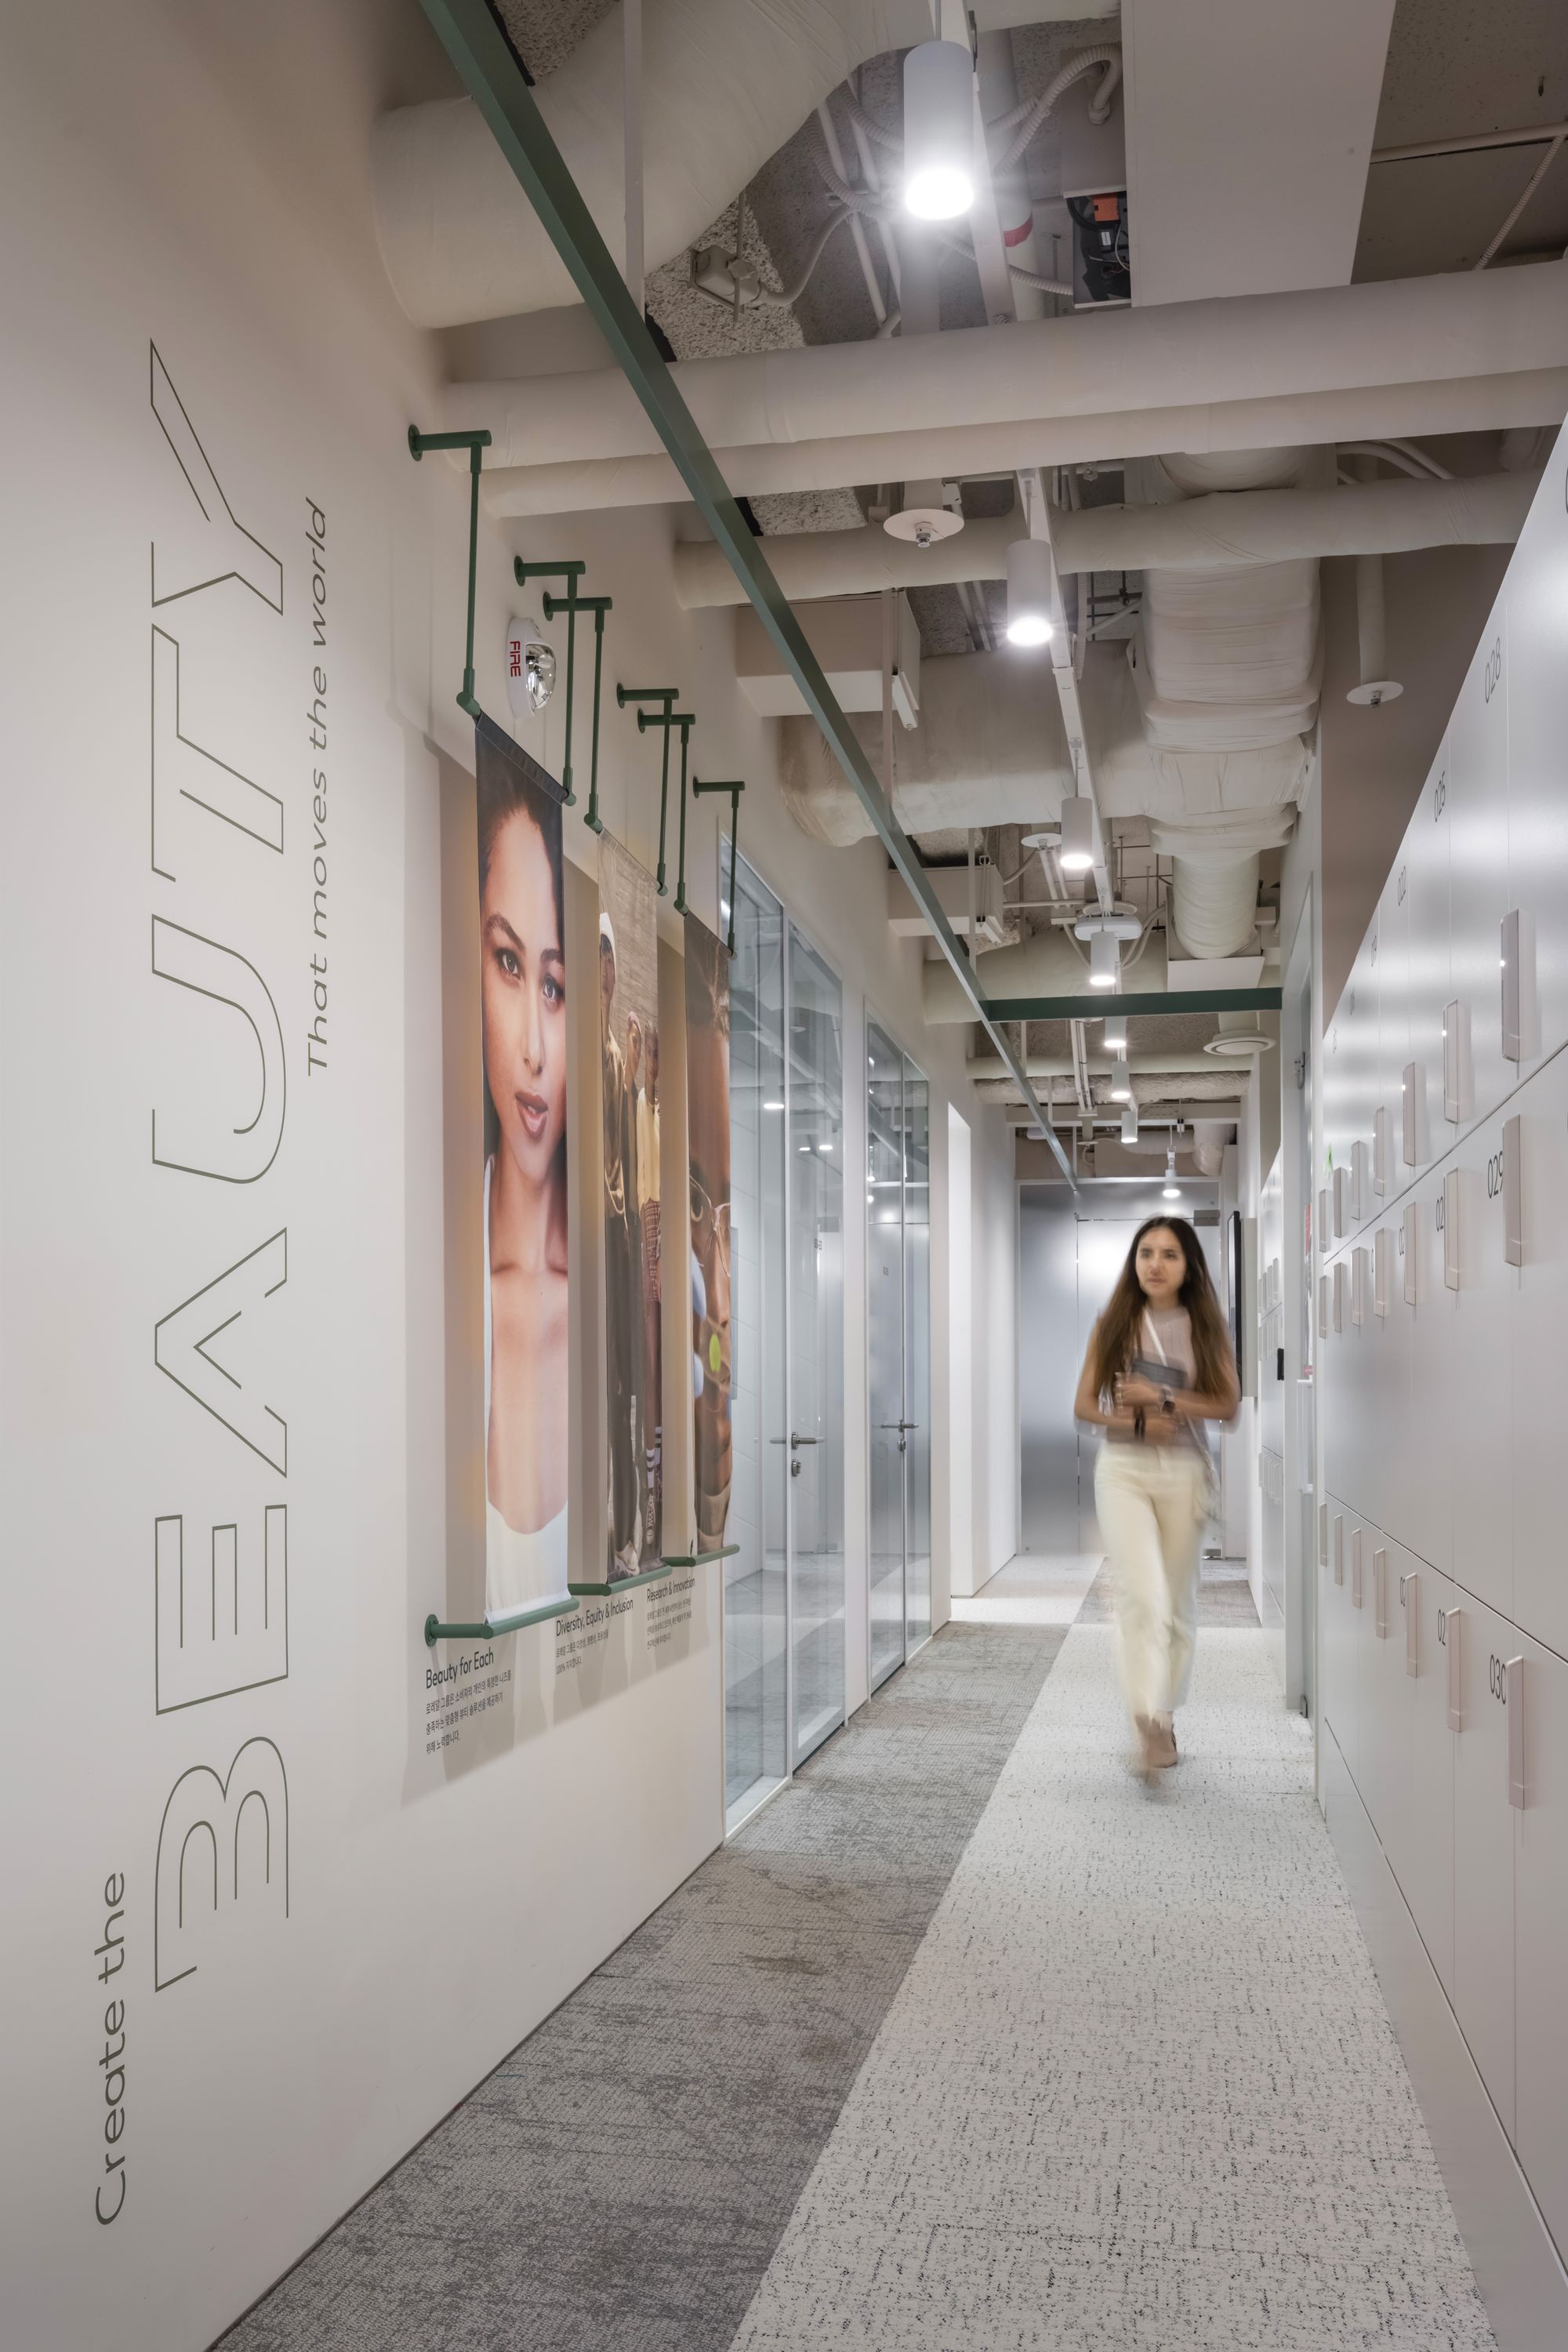 图片[13]|欧莱雅韩国办事处——首尔|ART-Arrakis | 建筑室内设计的创新与灵感